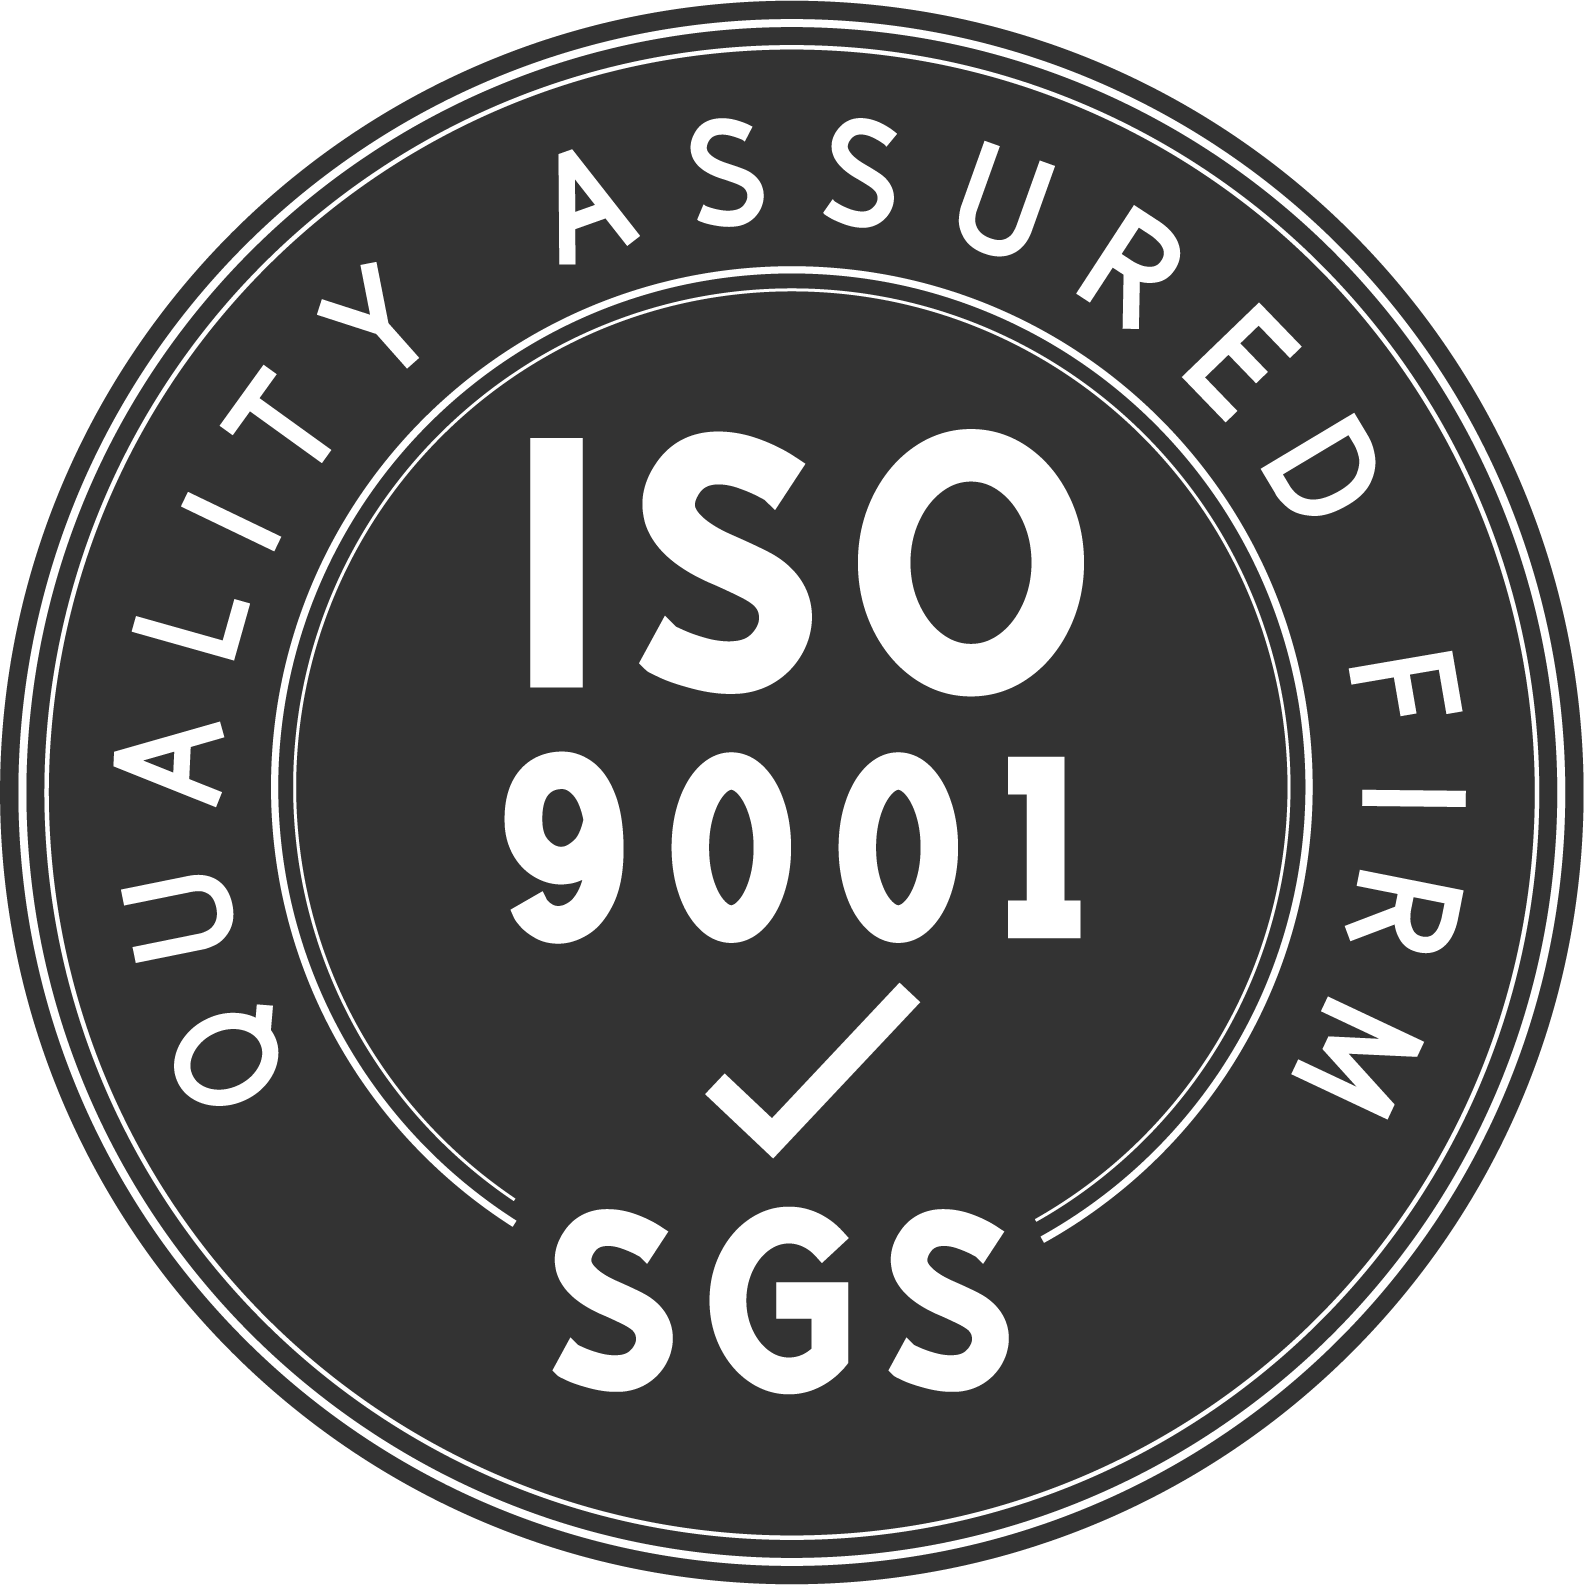 Mūsu rūpnīca ir ISO9001:2005 sertificēts augstas kvalitātes produktu ražotājs